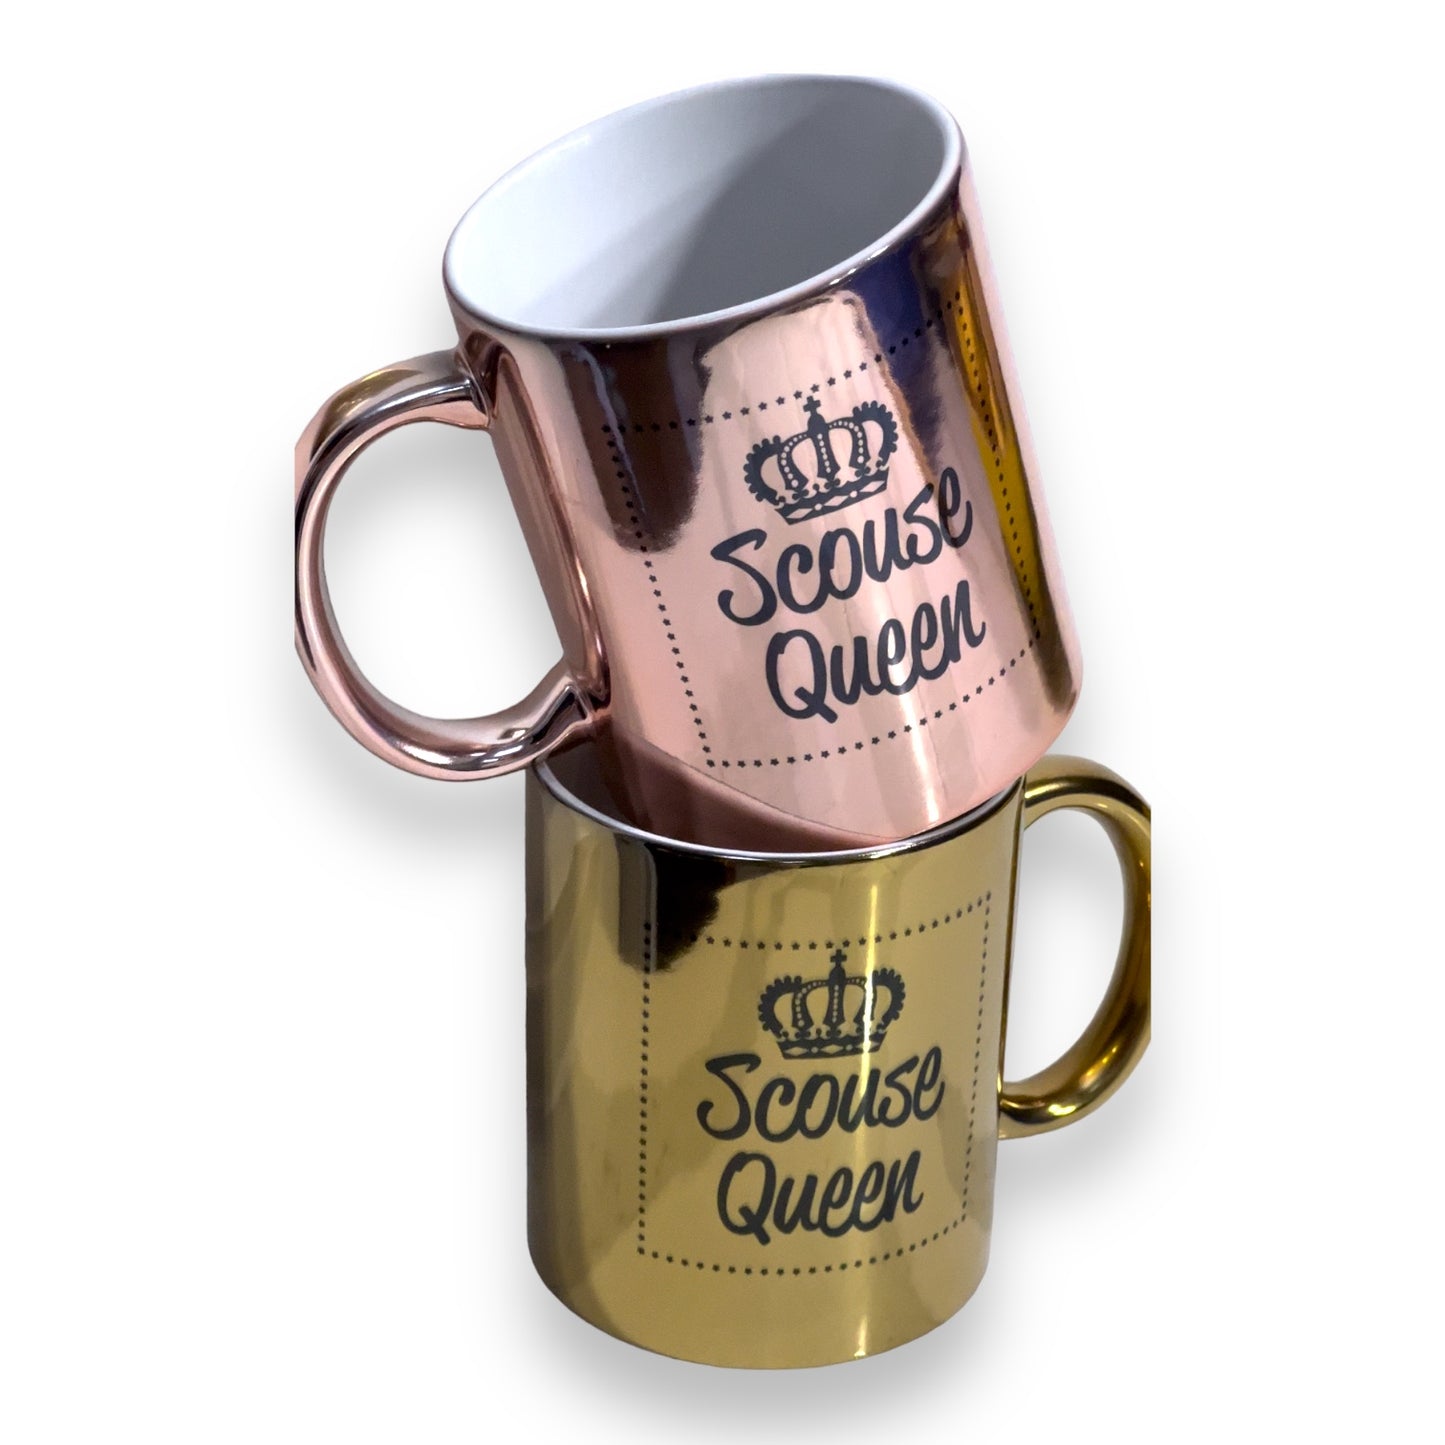 Scouse Queen Mug